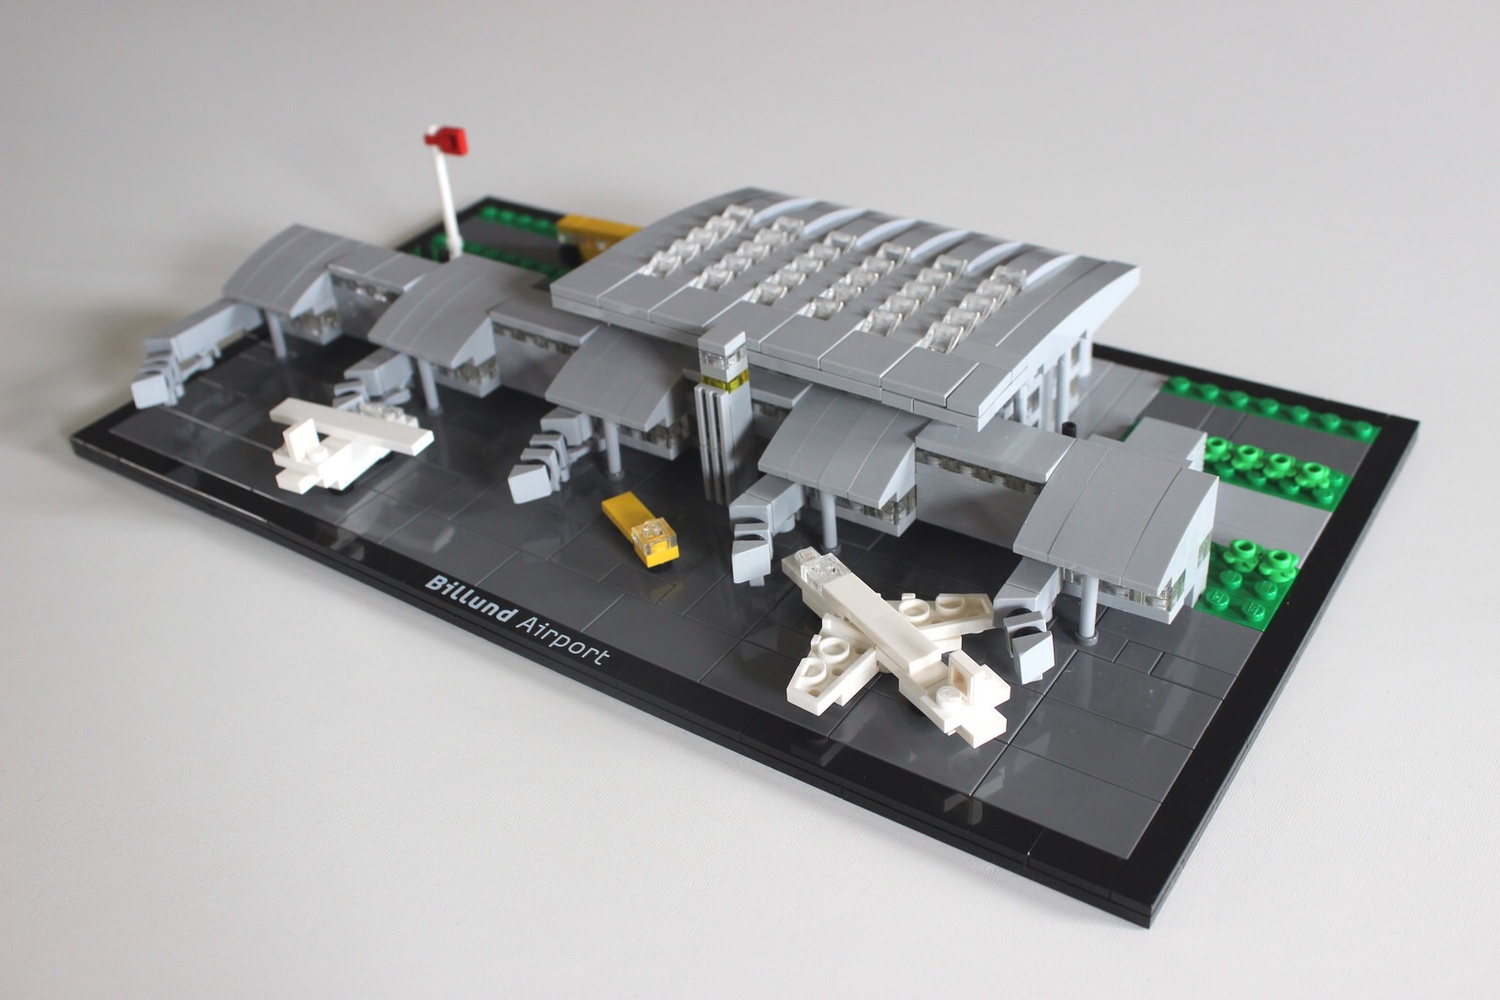 Hilsen Regnskab peregrination Billund Airport - BrickNerd - All things LEGO and the LEGO fan community